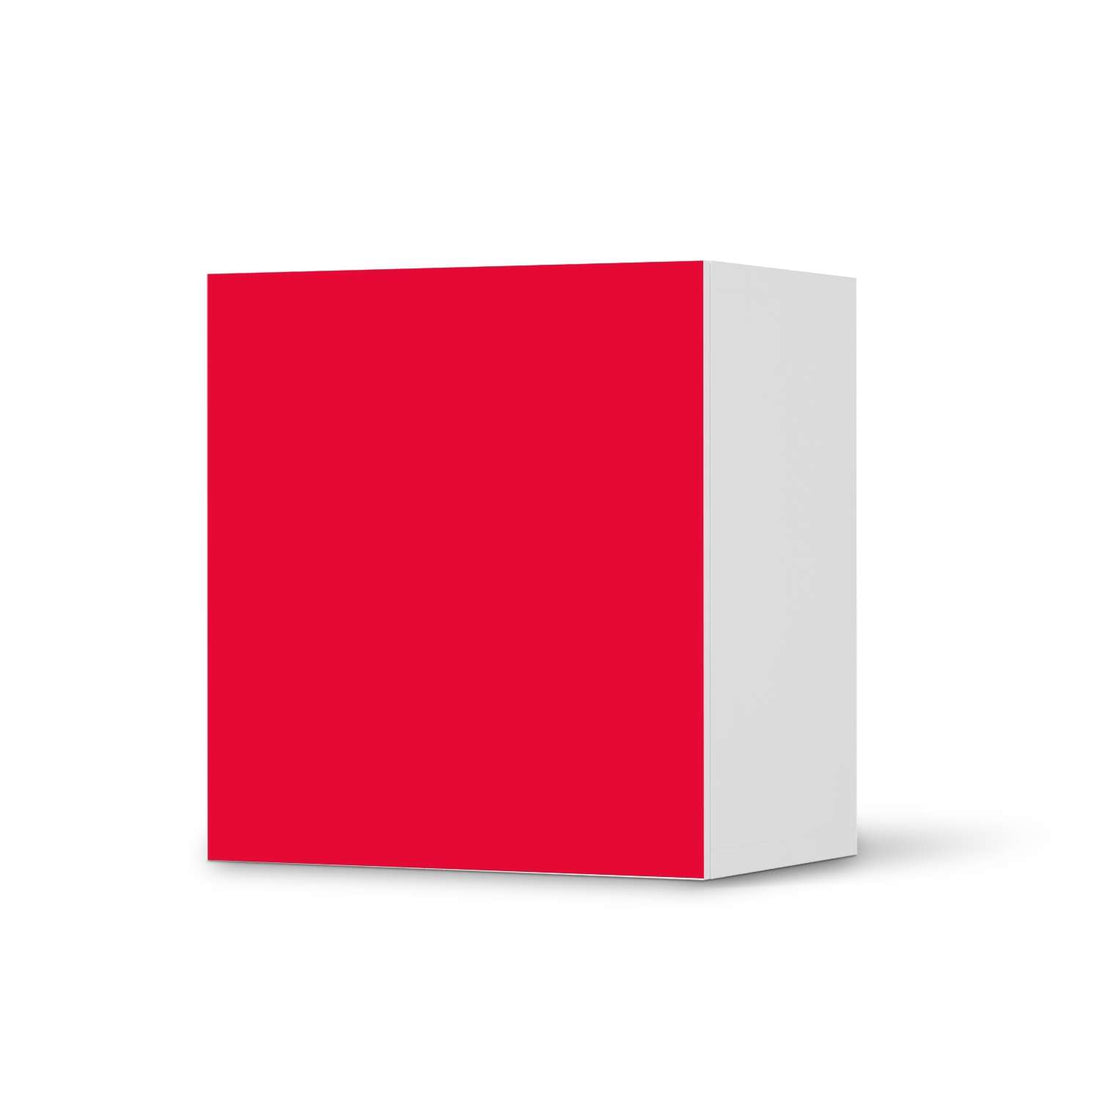 Klebefolie für Möbel Rot Light - IKEA Besta Regal 1 Türe  - weiss